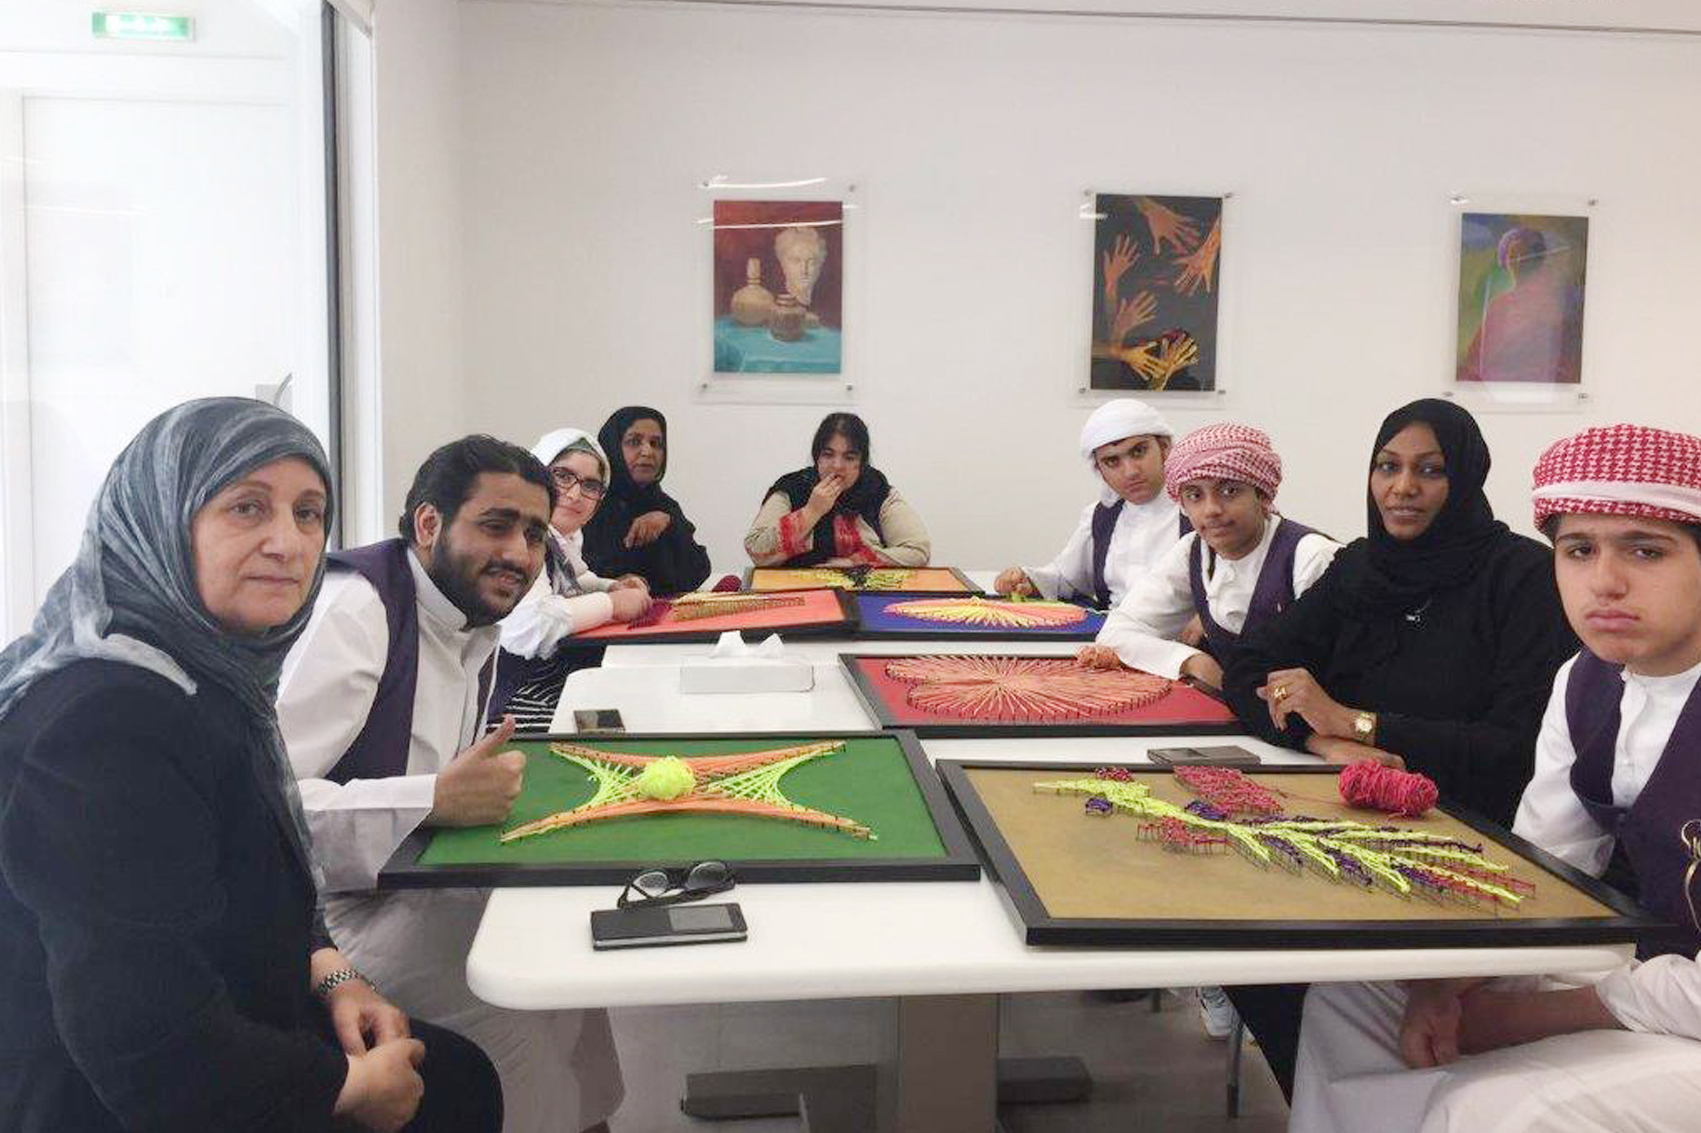 وفاء كوجاك معلمة الفنون في مركز الشارقة للتوحد: الفن طريقة تعبير